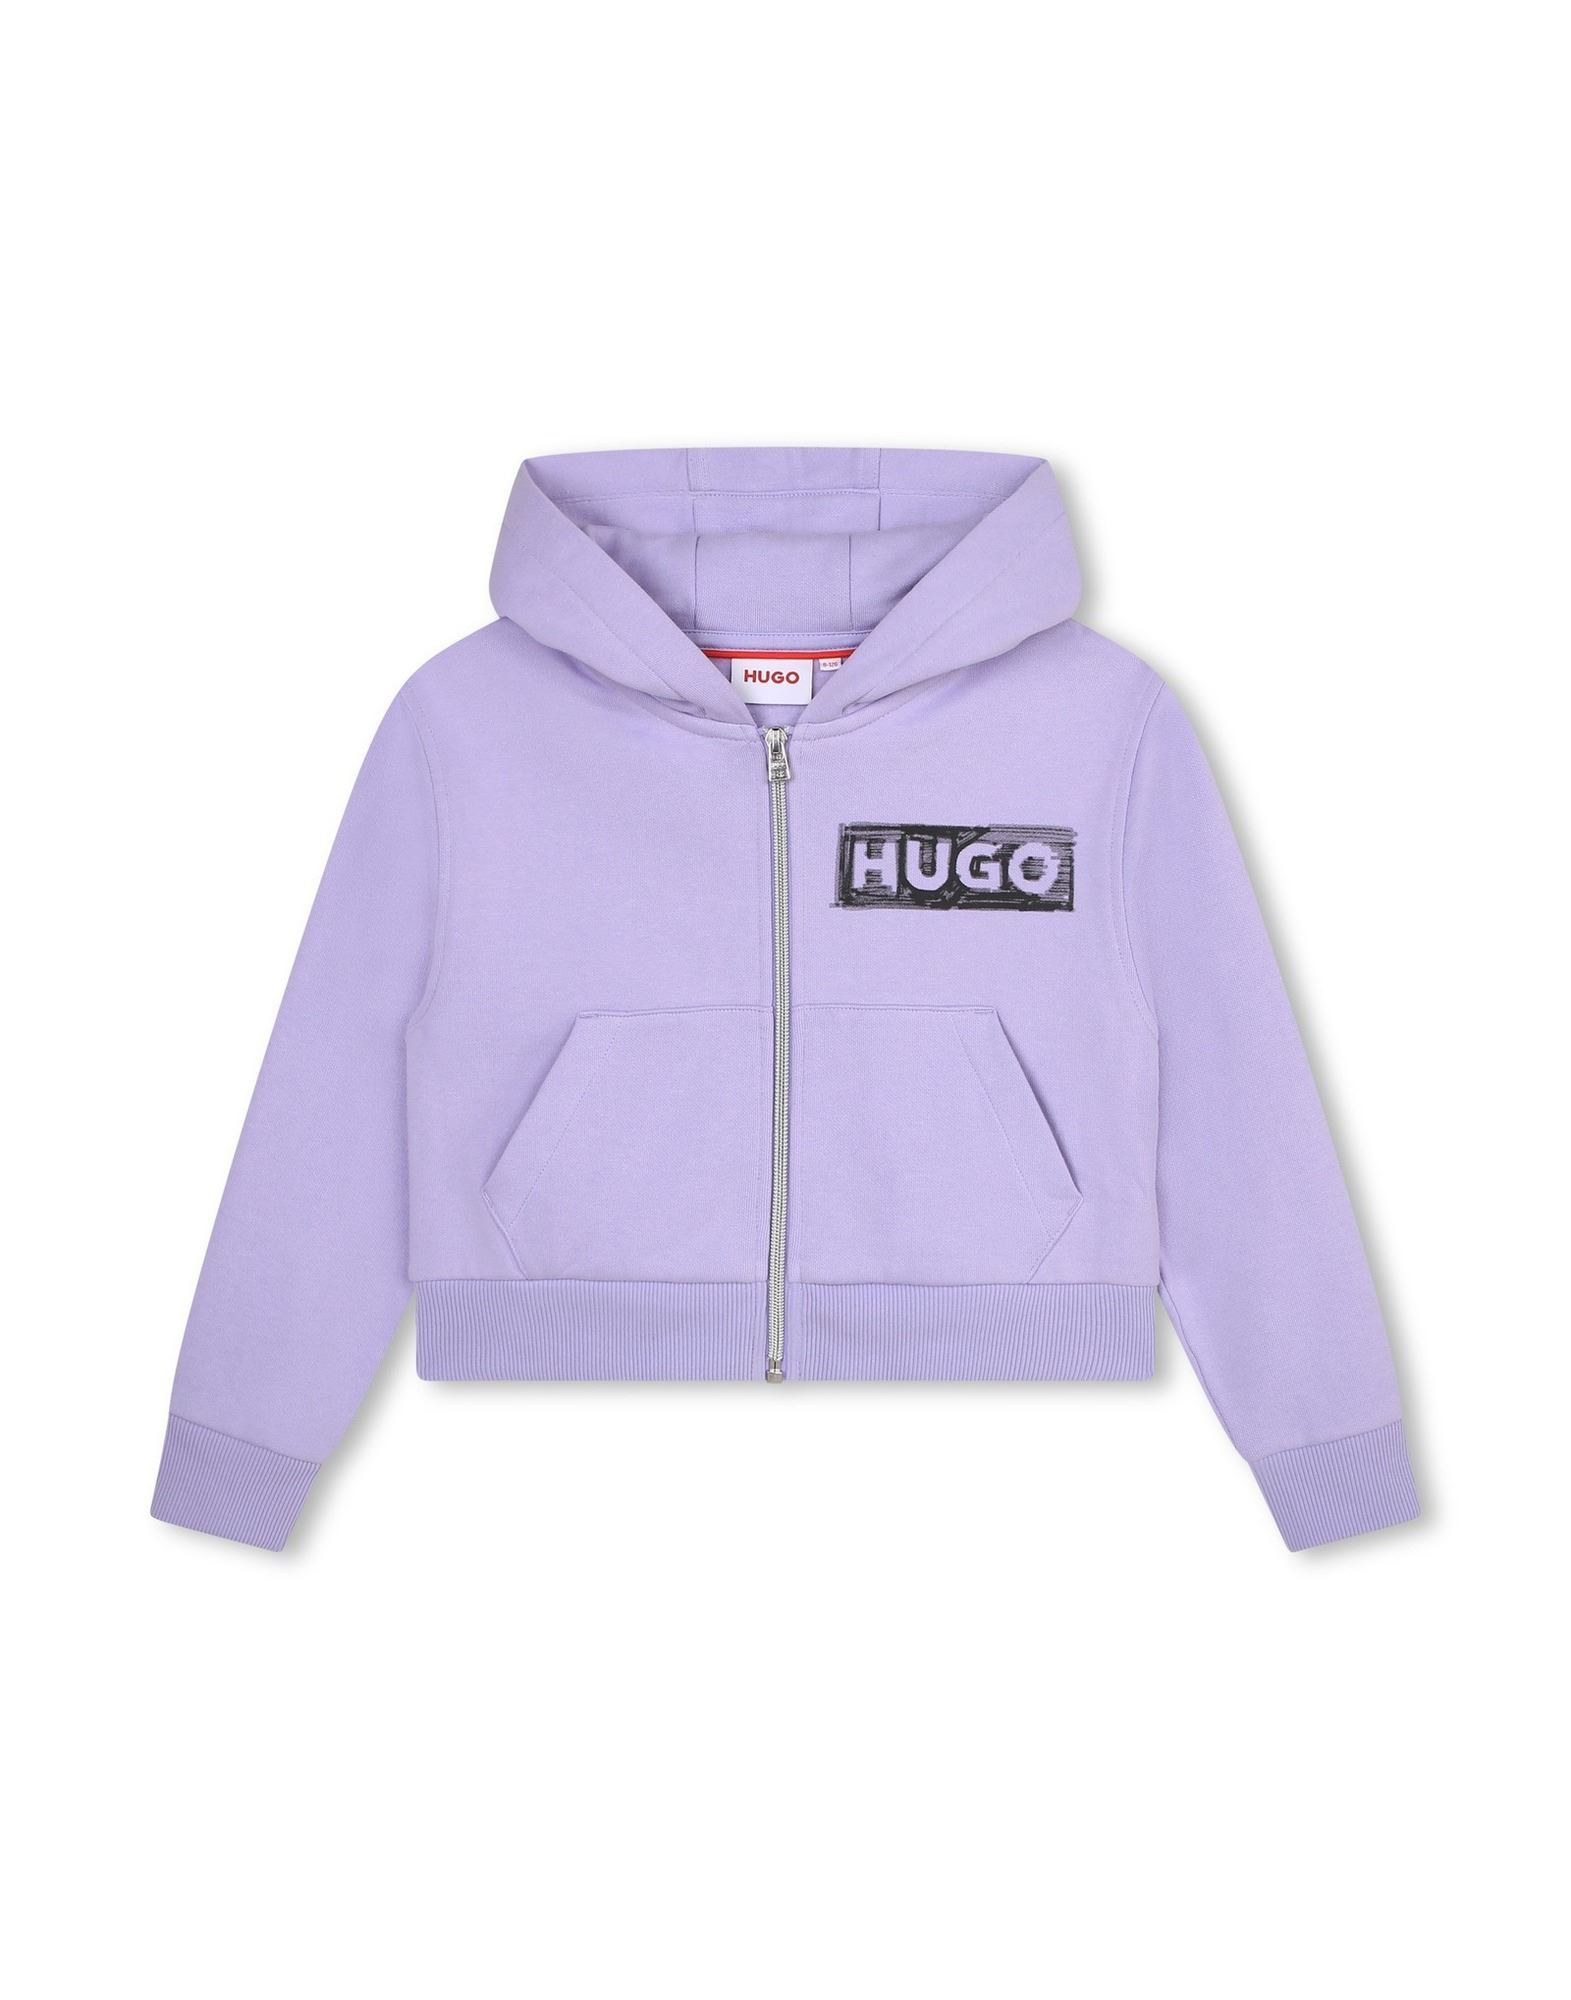 HUGO Sweatshirt Kinder Violett von HUGO